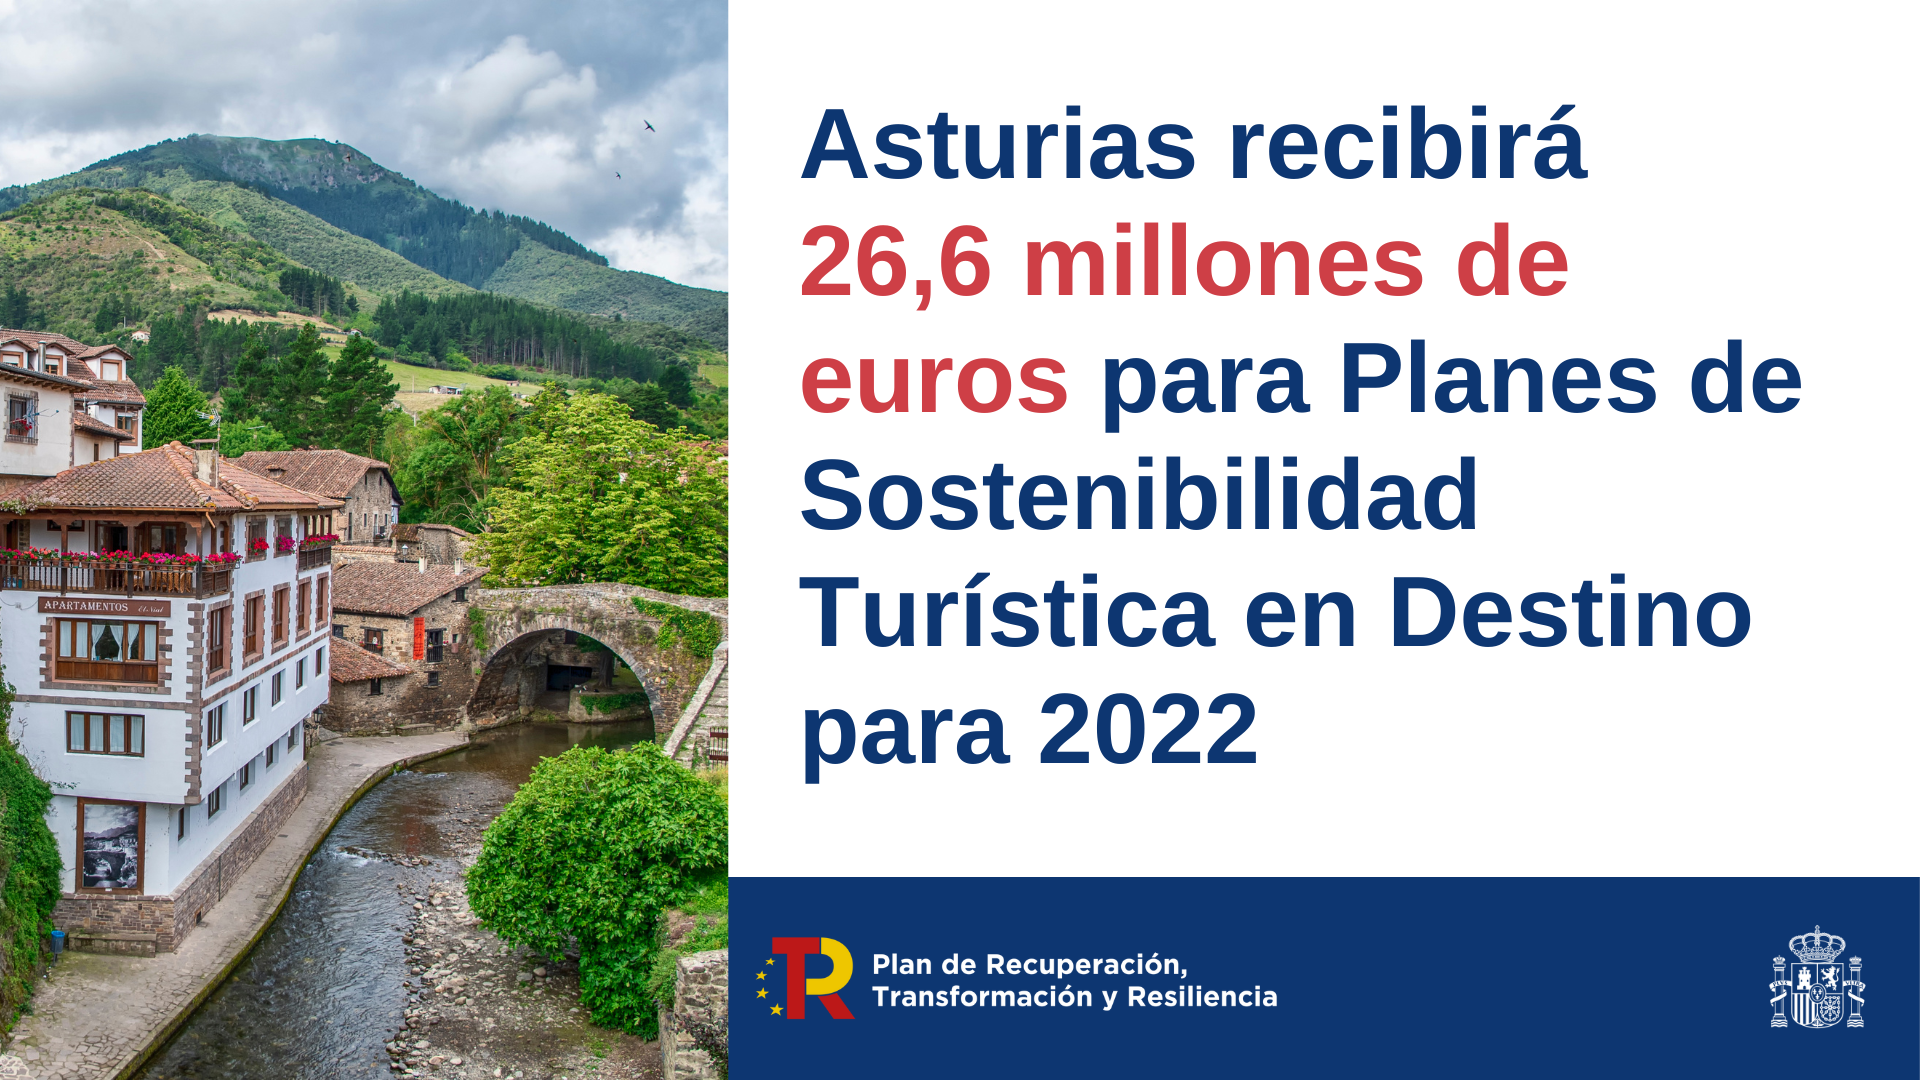 El Gobierno destina más de 26,6 millones de euros a Asturias en Planes de Sostenibilidad Turística en Destino para 2022